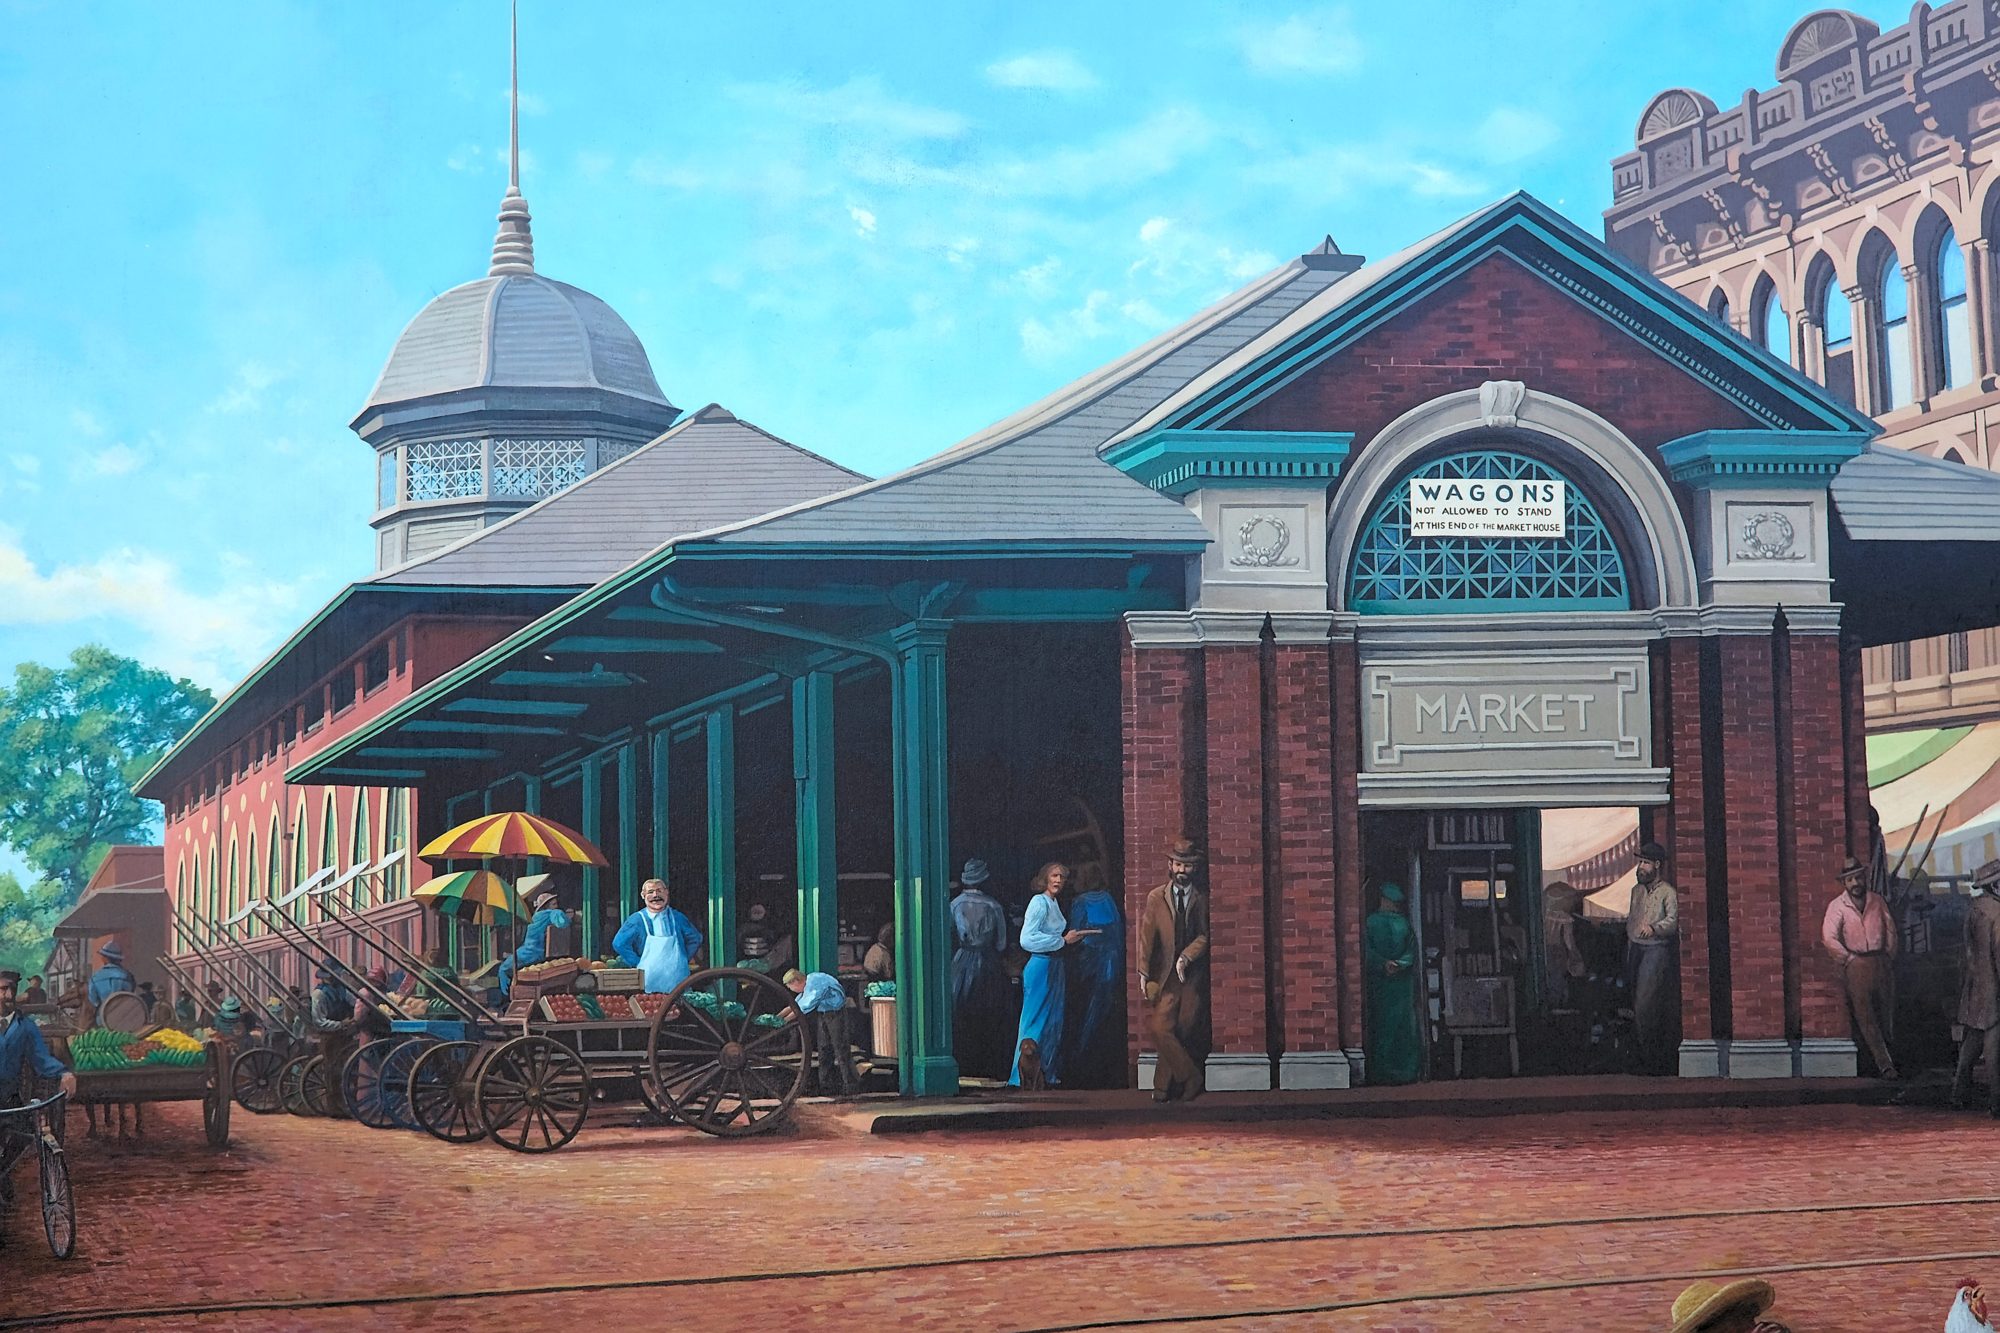 A mural of Paducah's Market building